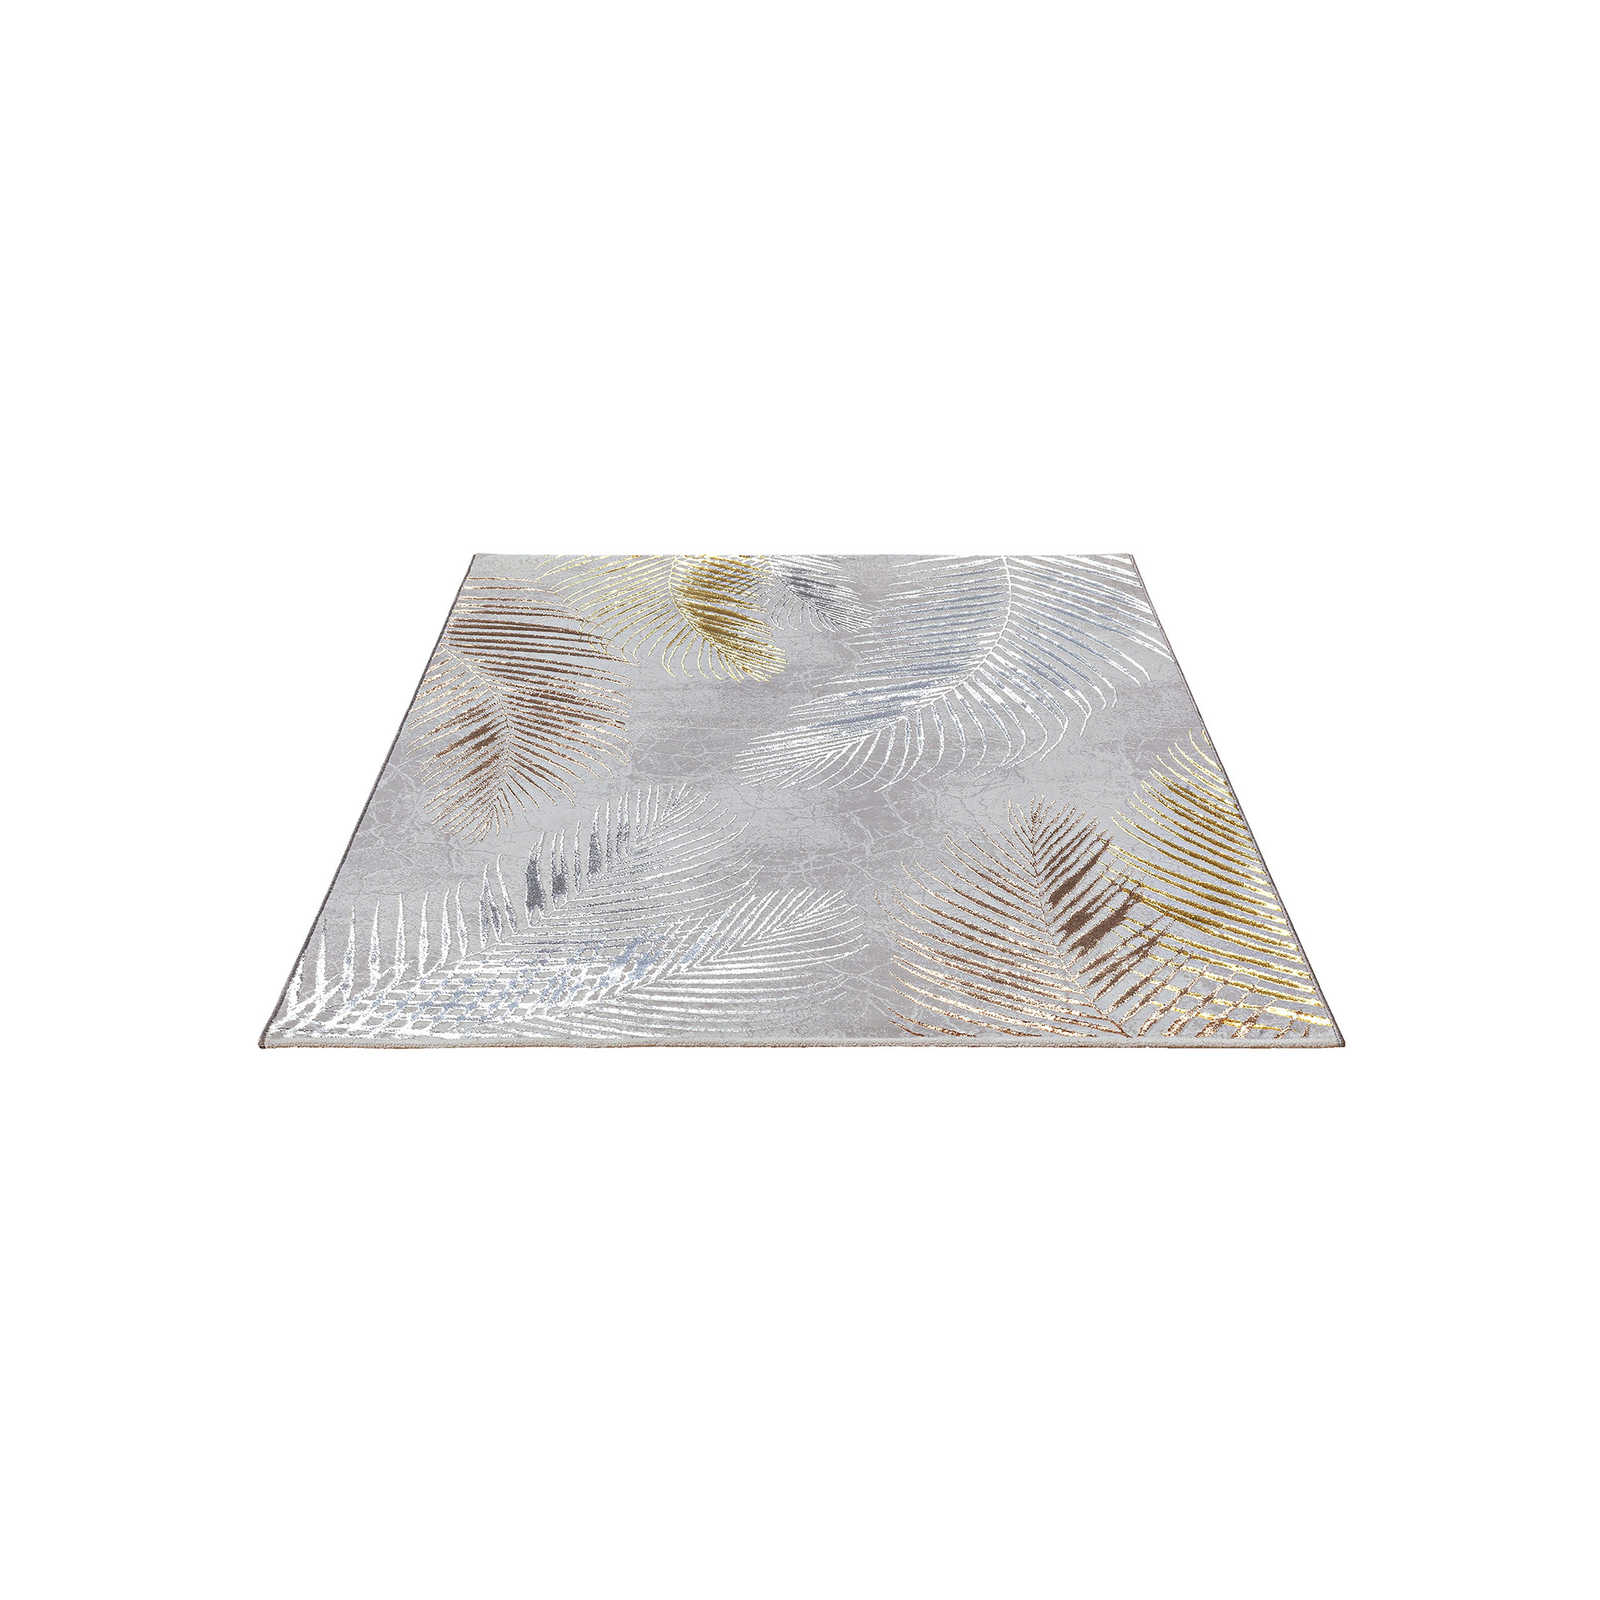 Knuffelzacht hoogpolig tapijt in grijs als loper - 230 x 160 cm
